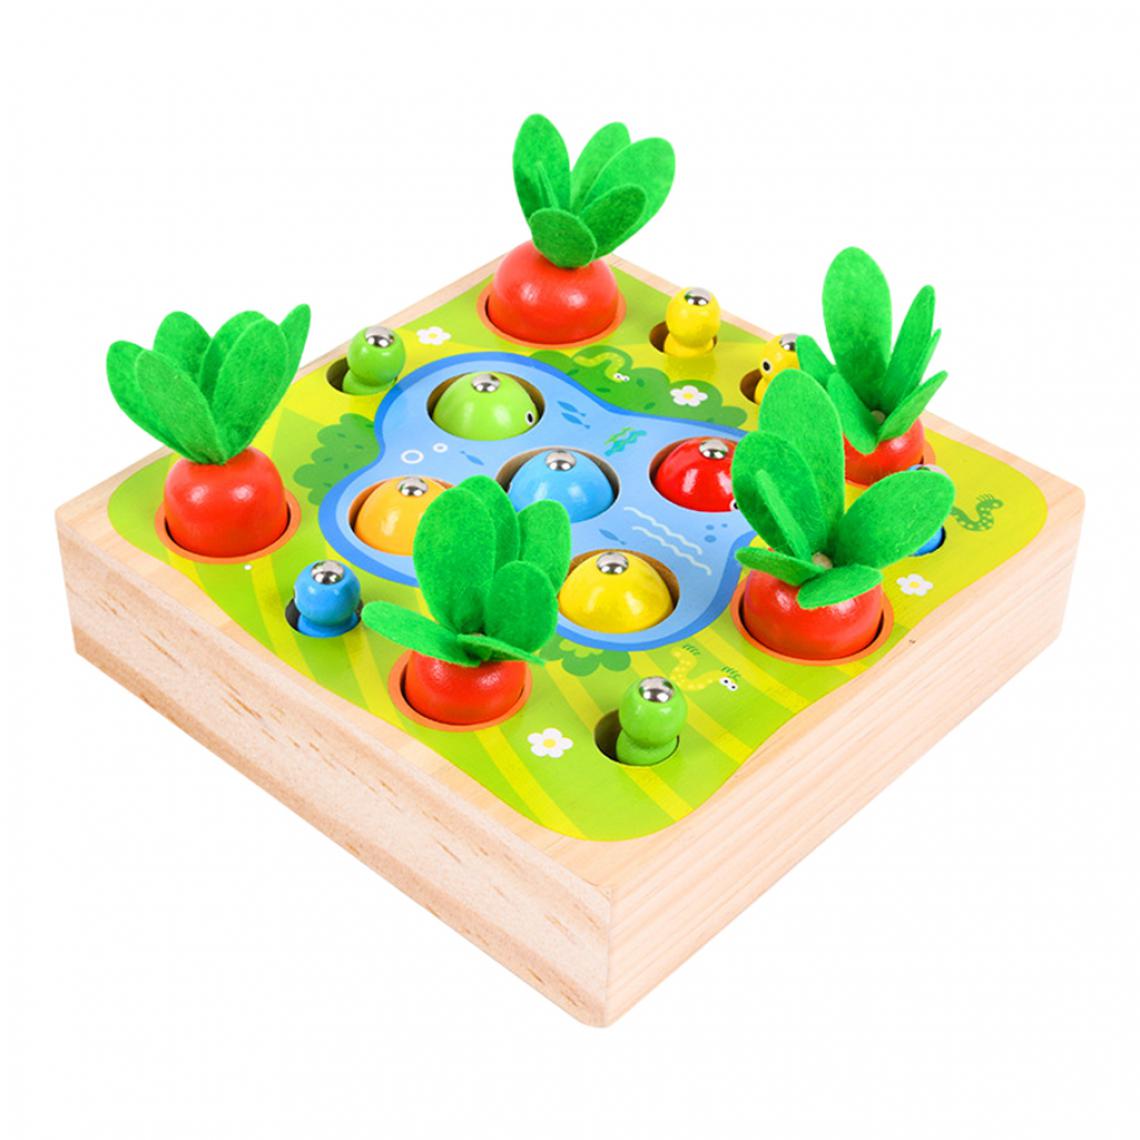 marque generique - En bois Montessori Jouets En Bois Blocs de Puzzle Jeu des Jeunes Enfants Jouets Éducatifs Enfant Montessori Jouet - Jeux d'éveil